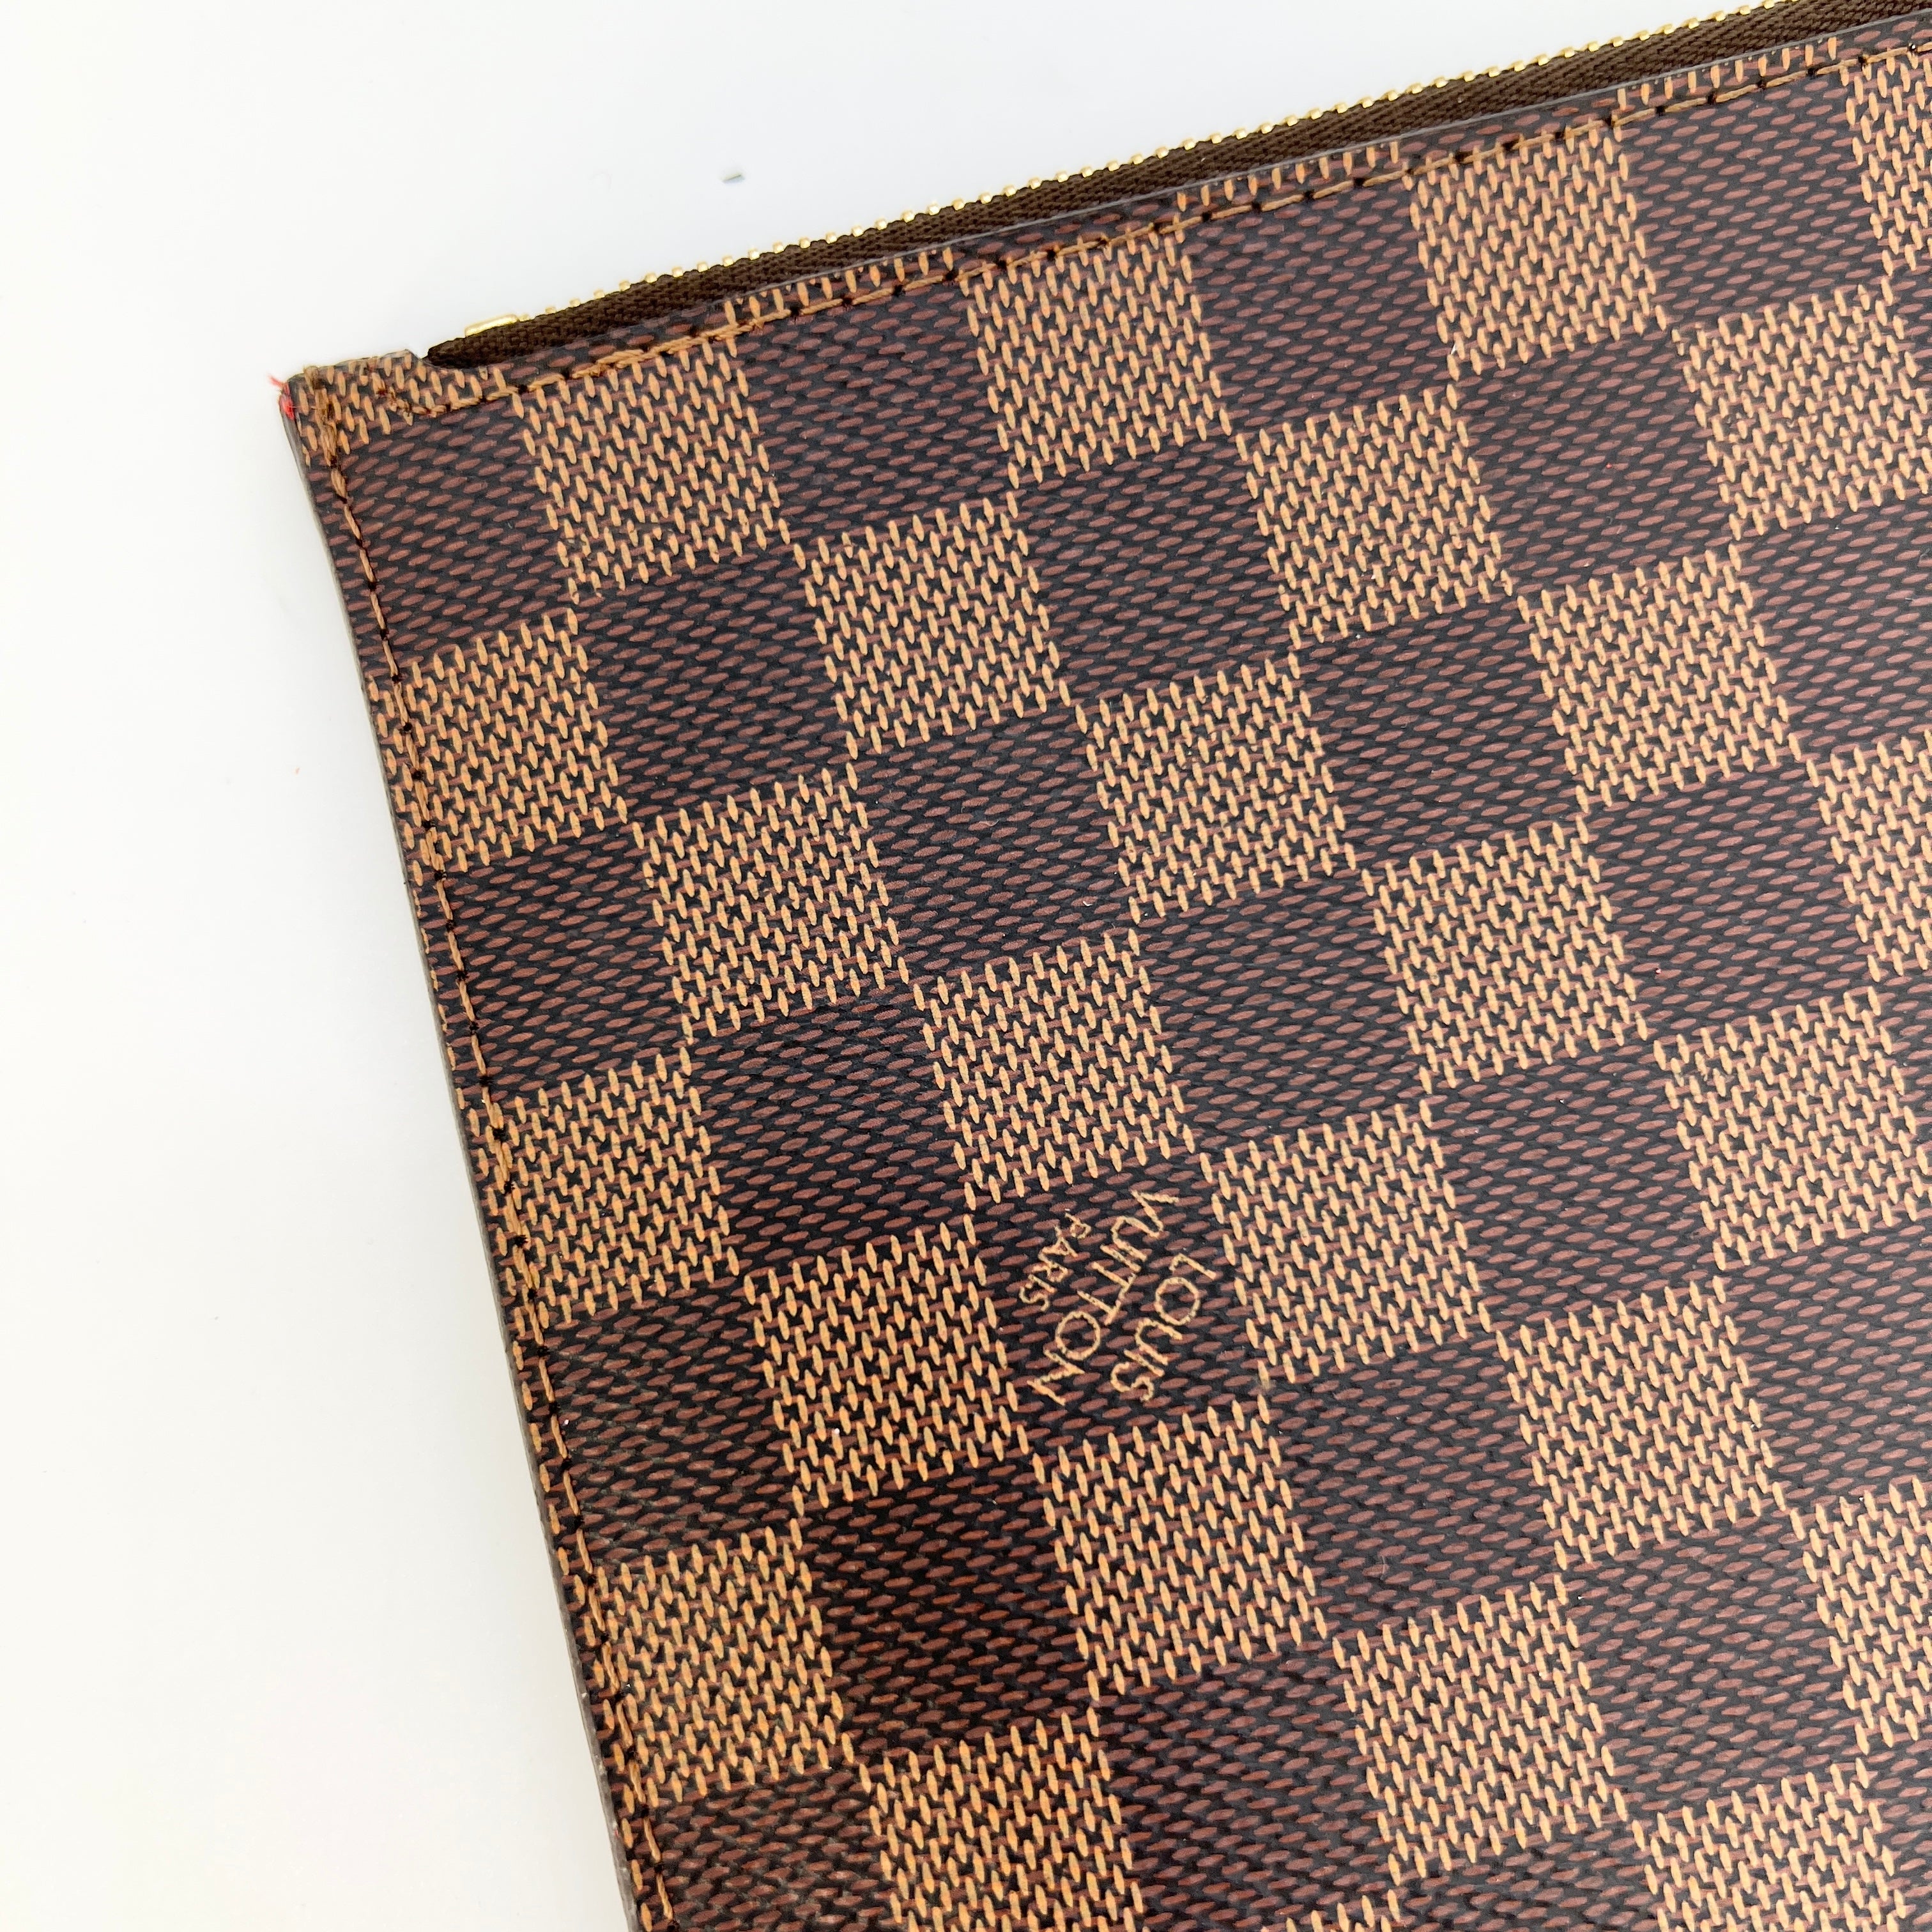 Louis Vuitton makeup bag in ebene checkered coated canvas, En très bon état  Brown Leather Cloth ref.200190 - Joli Closet